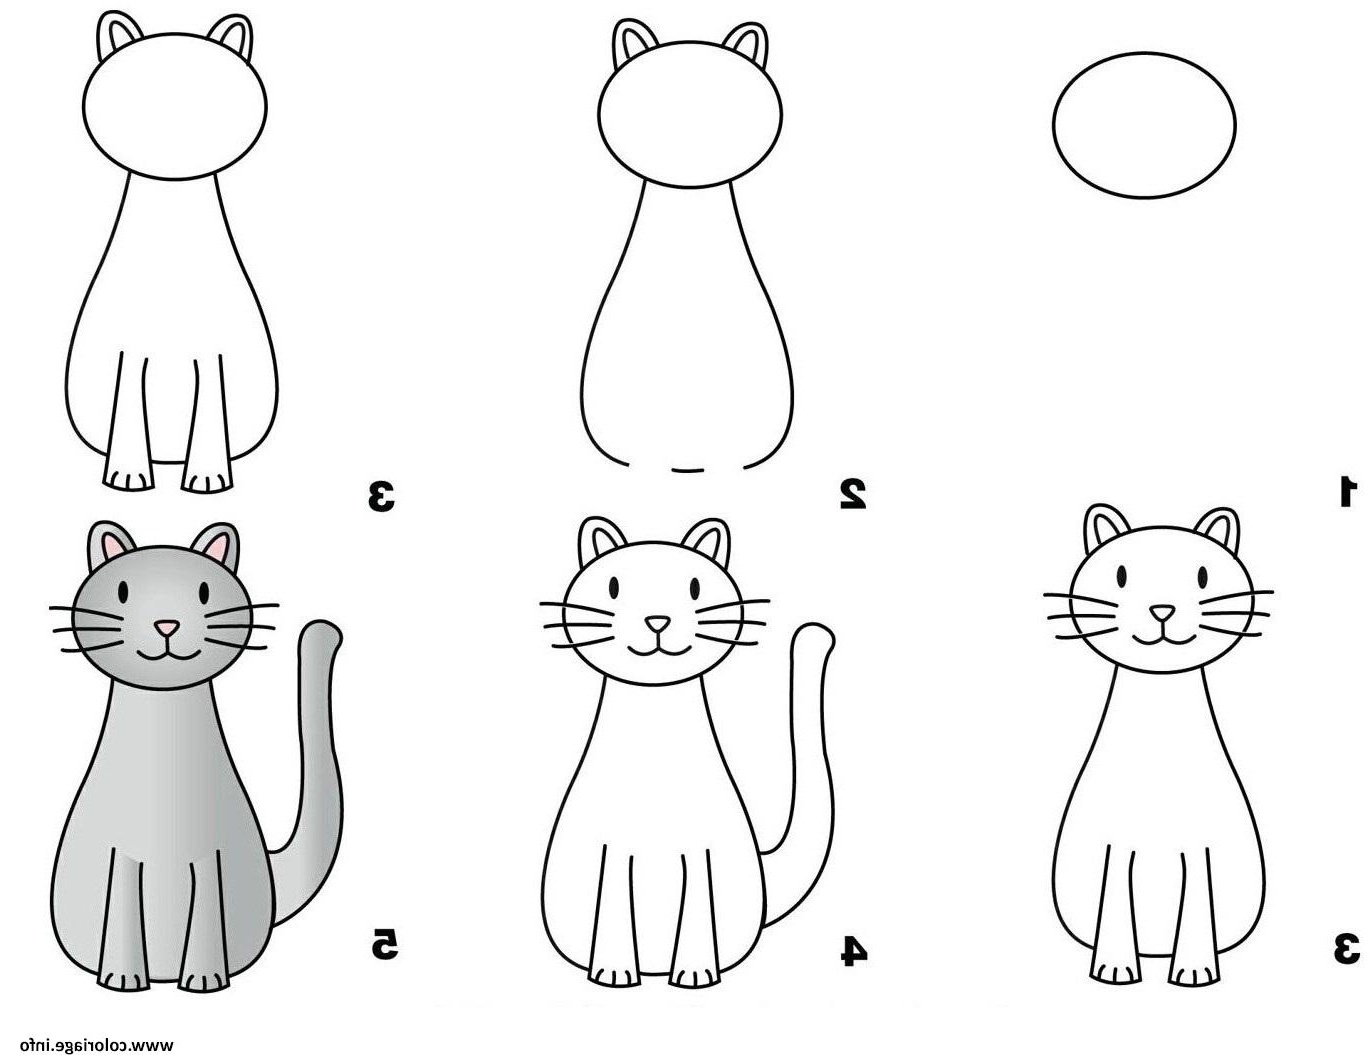 Нарисовать кошку поэтапно для детей. Пошаговое рисование для детей. Последовательное рисование для детей. Схемы рисования для дошкольников. Схема рисования кошки для детей.